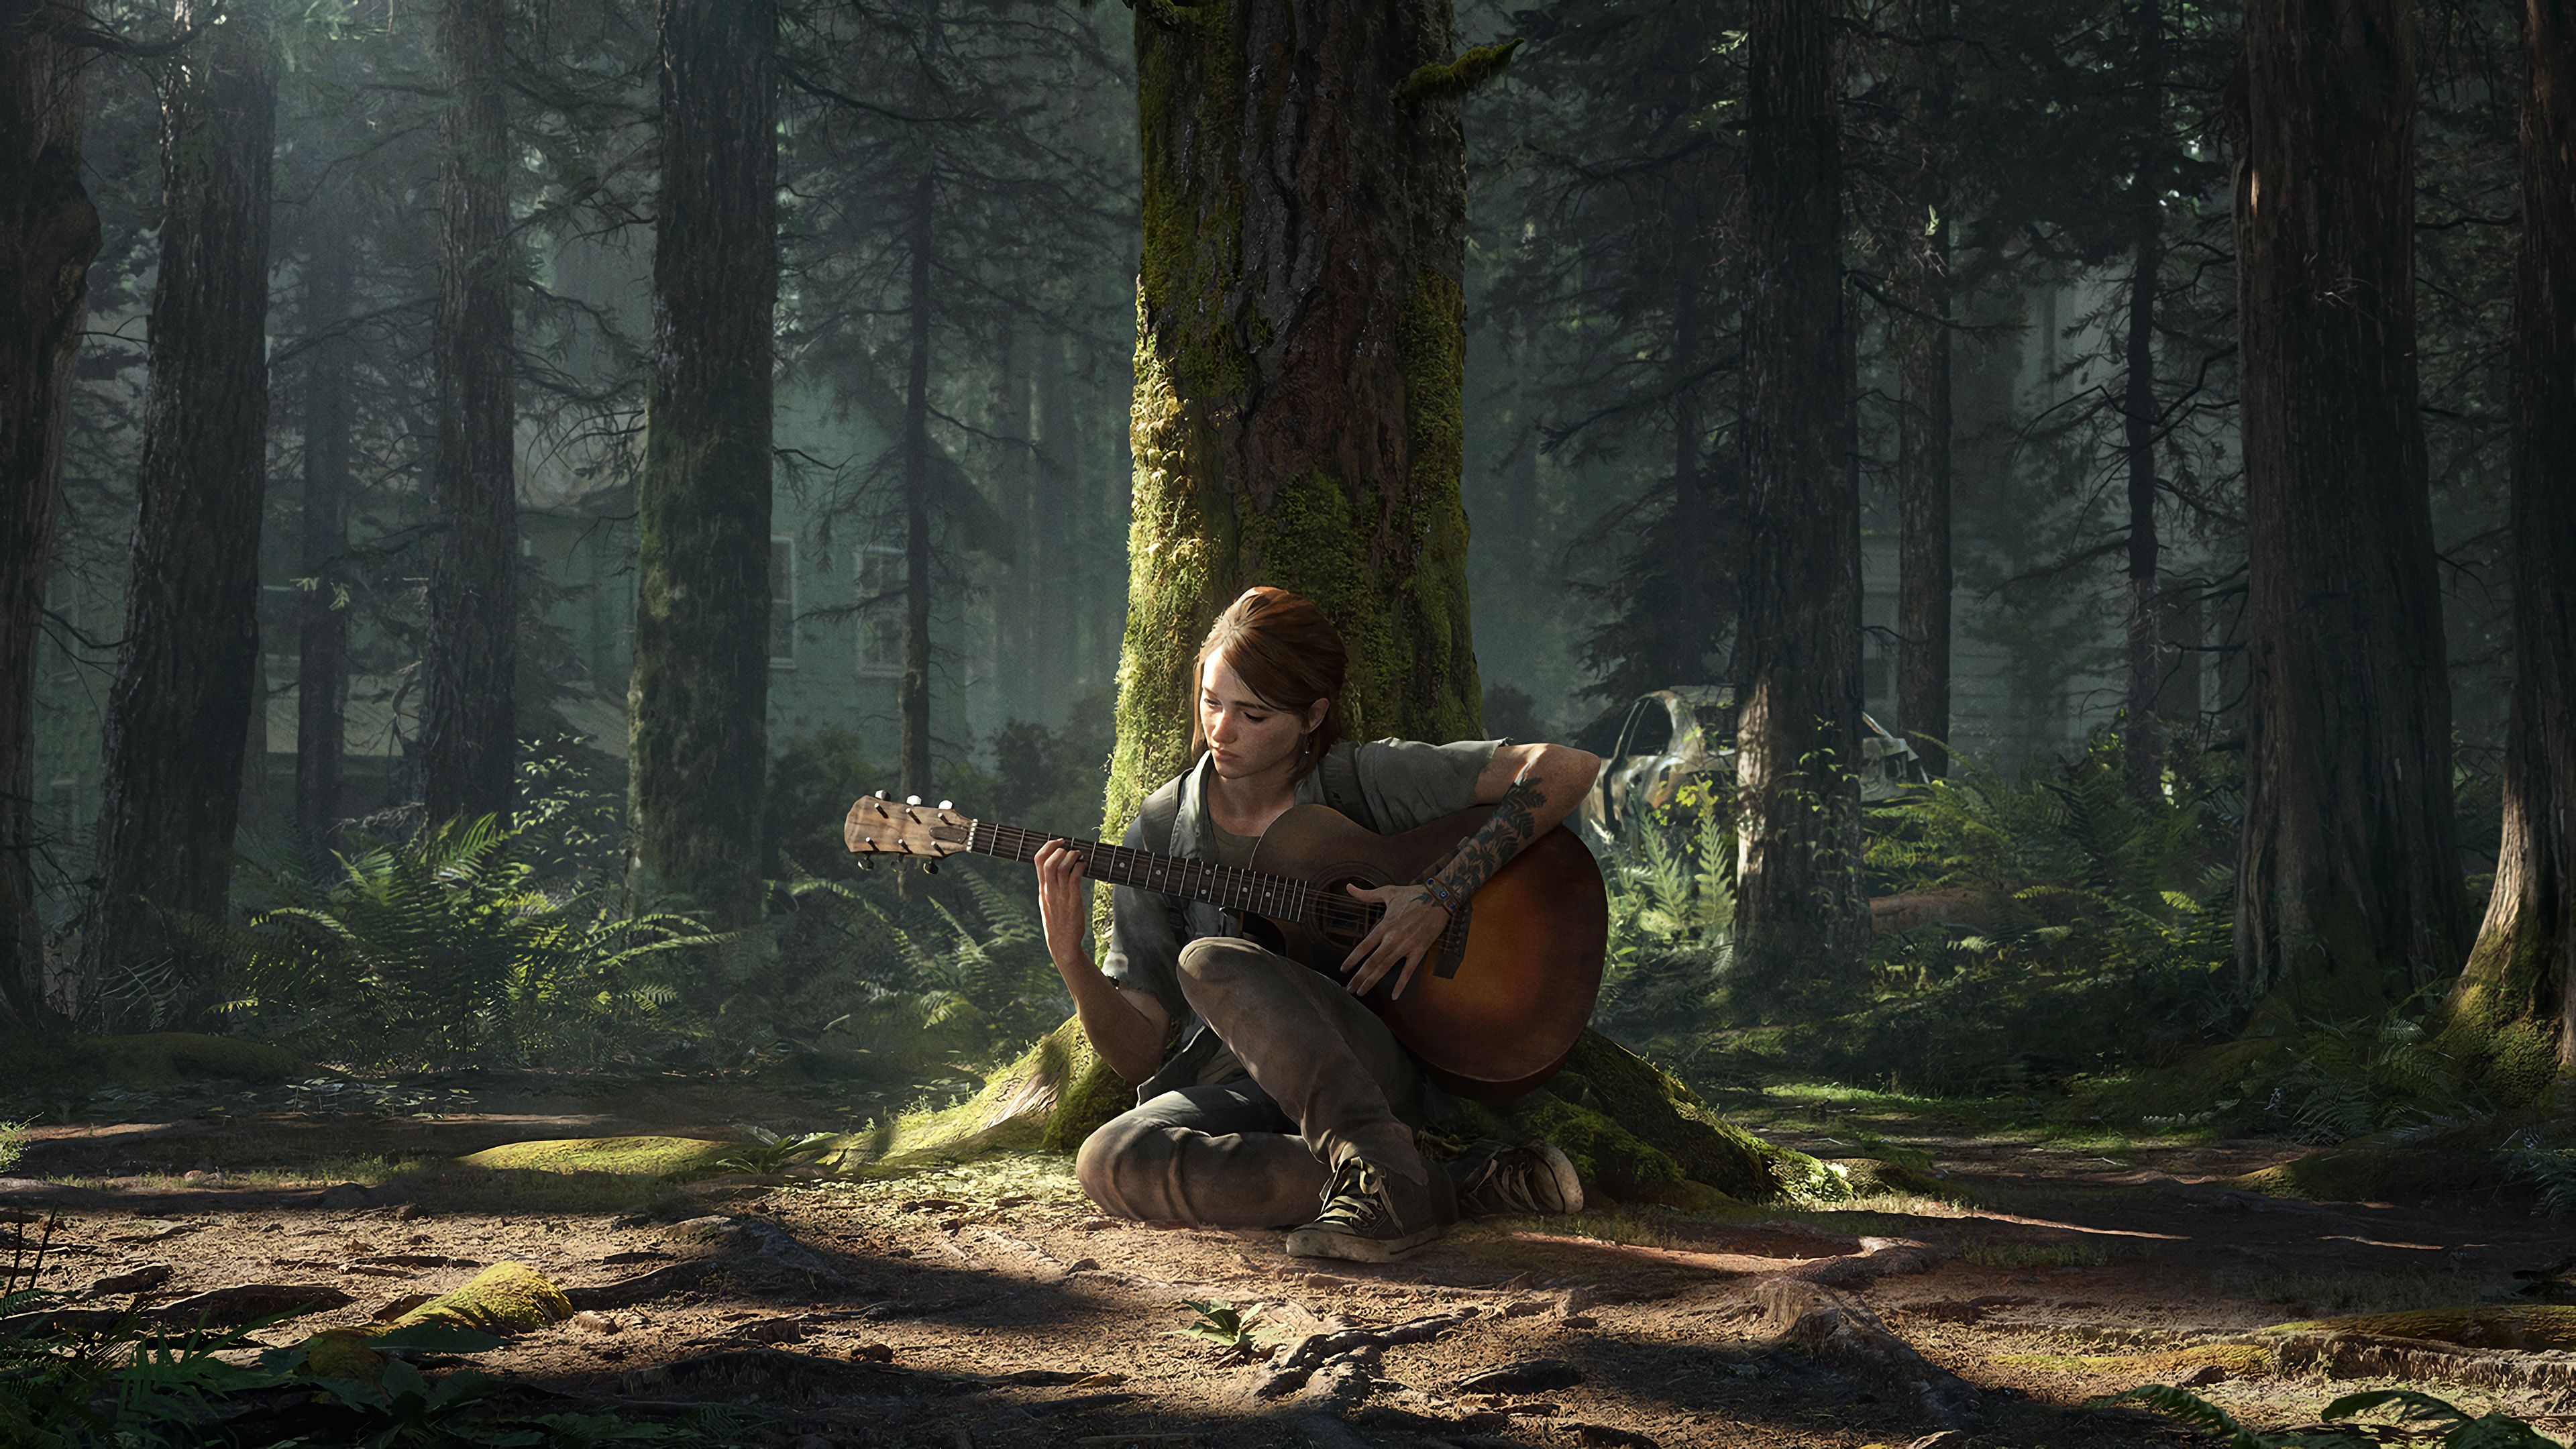 60+ 4K Ellie (The Last of Us) Wallpapers